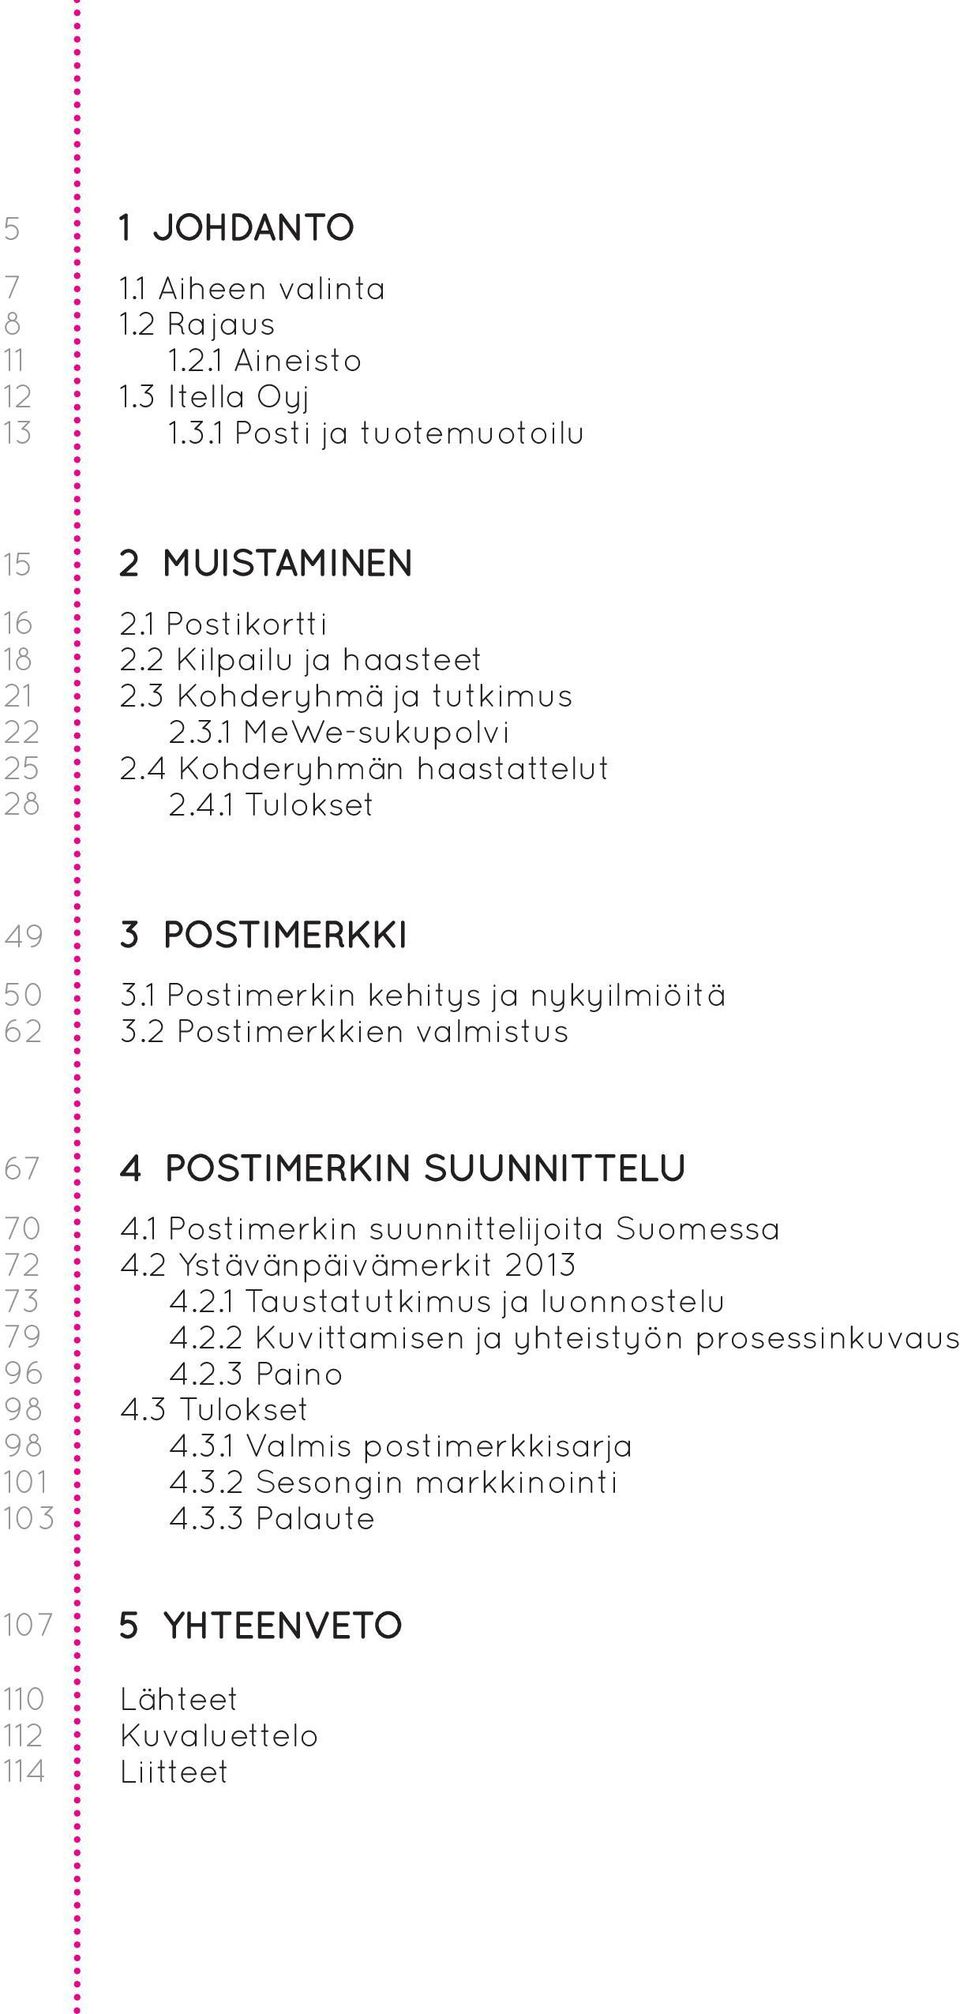 2 Postimerkkien valmistus 67 70 72 73 79 96 98 98 101 103 4 POSTIMERKIN SUUNNITTELU 4.1 Postimerkin suunnittelijoita Suomessa 4.2 Ystävänpäivämerkit 2013 4.2.1 Taustatutkimus ja luonnostelu 4.